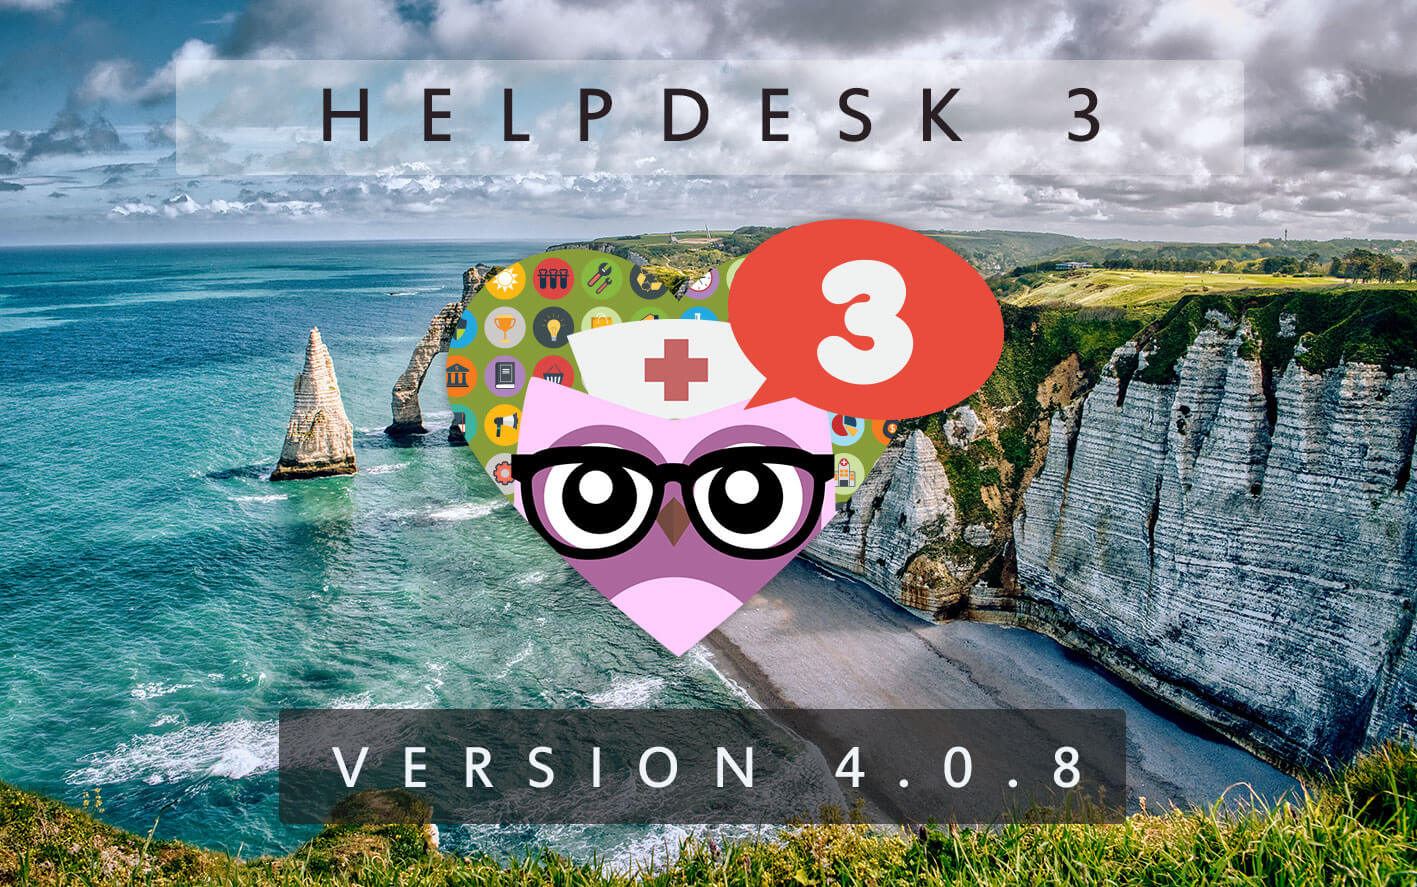 HelpDesk 3 - Version 4.0.8